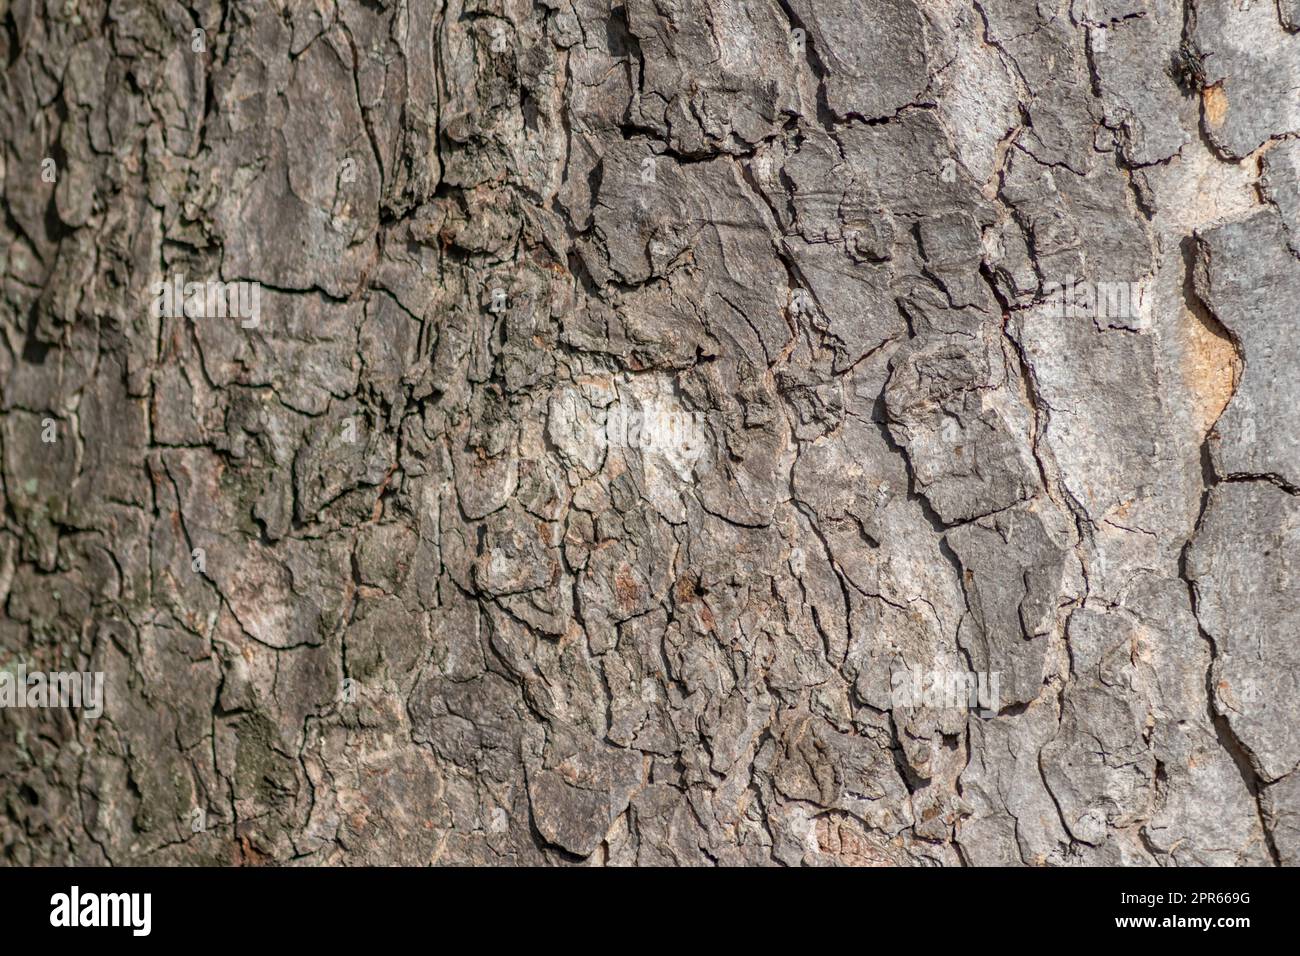 La corteccia degli alberi macro con strutture naturali fini e corteccia ruvida come sfondo naturale ed ecologico mostra una bella struttura in legno con cicatrici e protezione come habitat per piccoli insetti Foto Stock